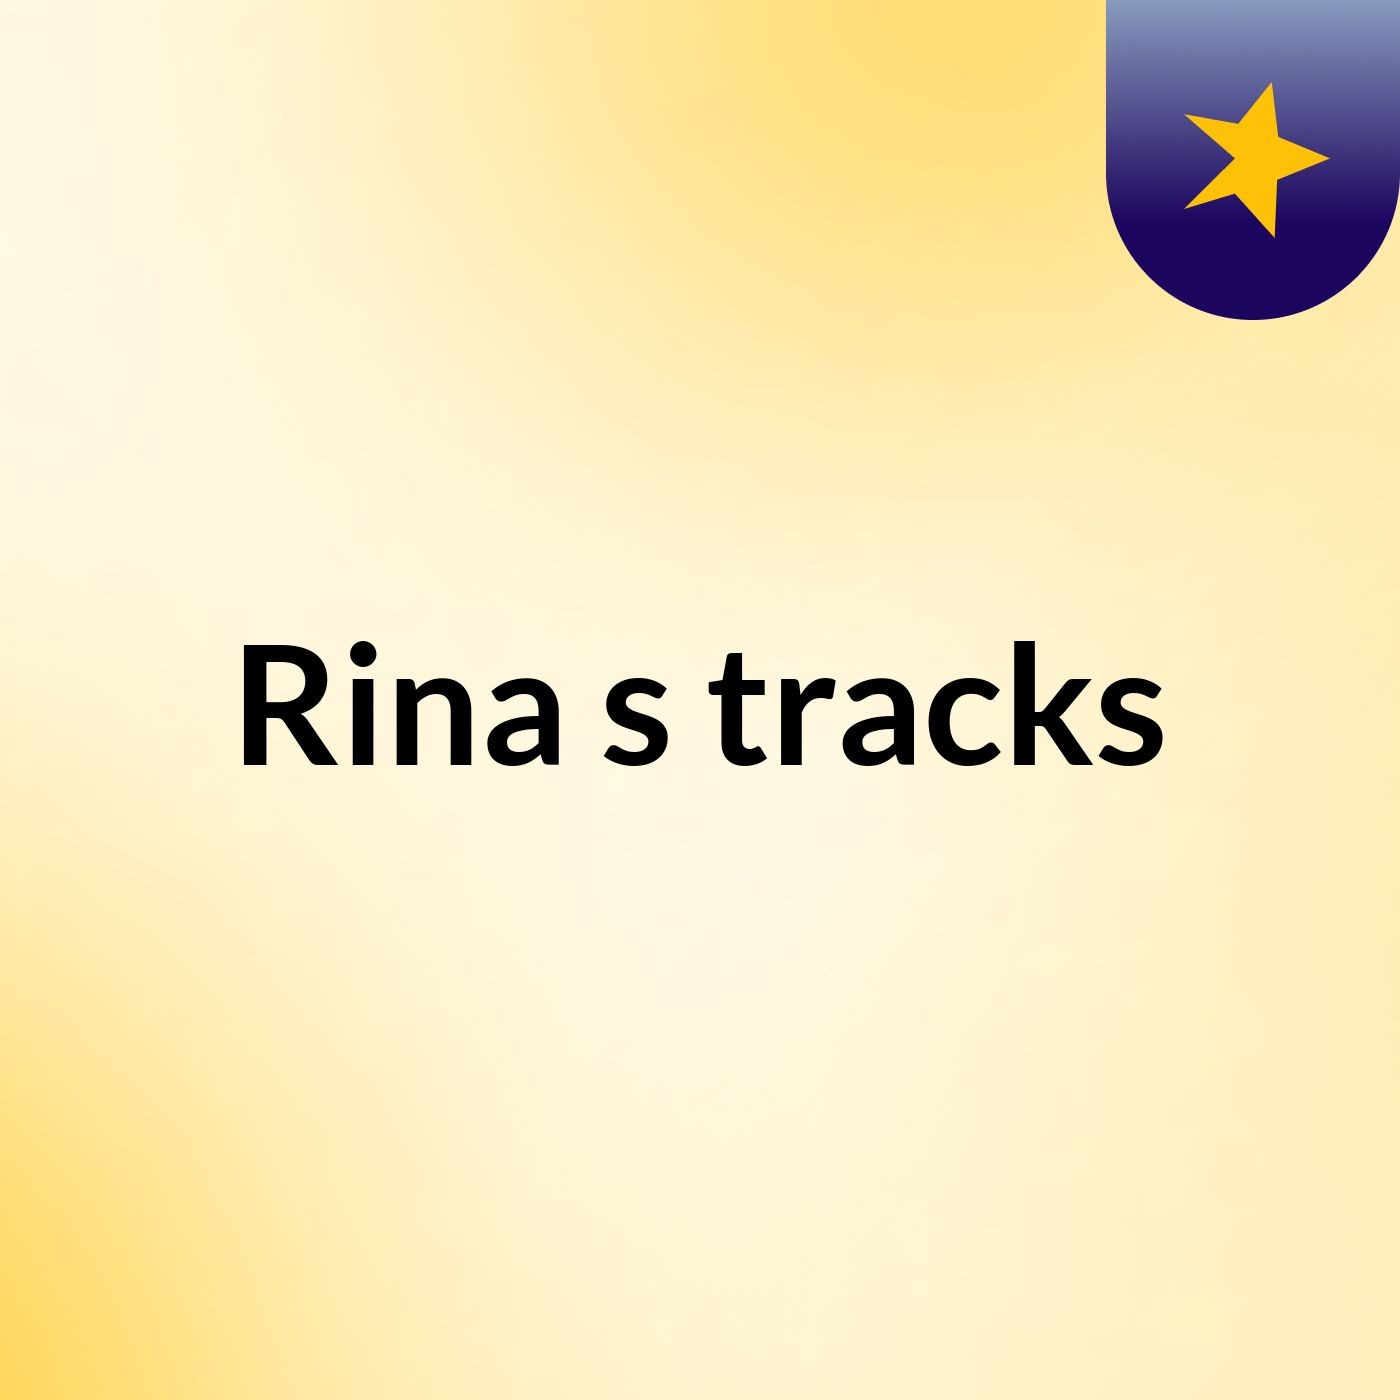 Rina's tracks